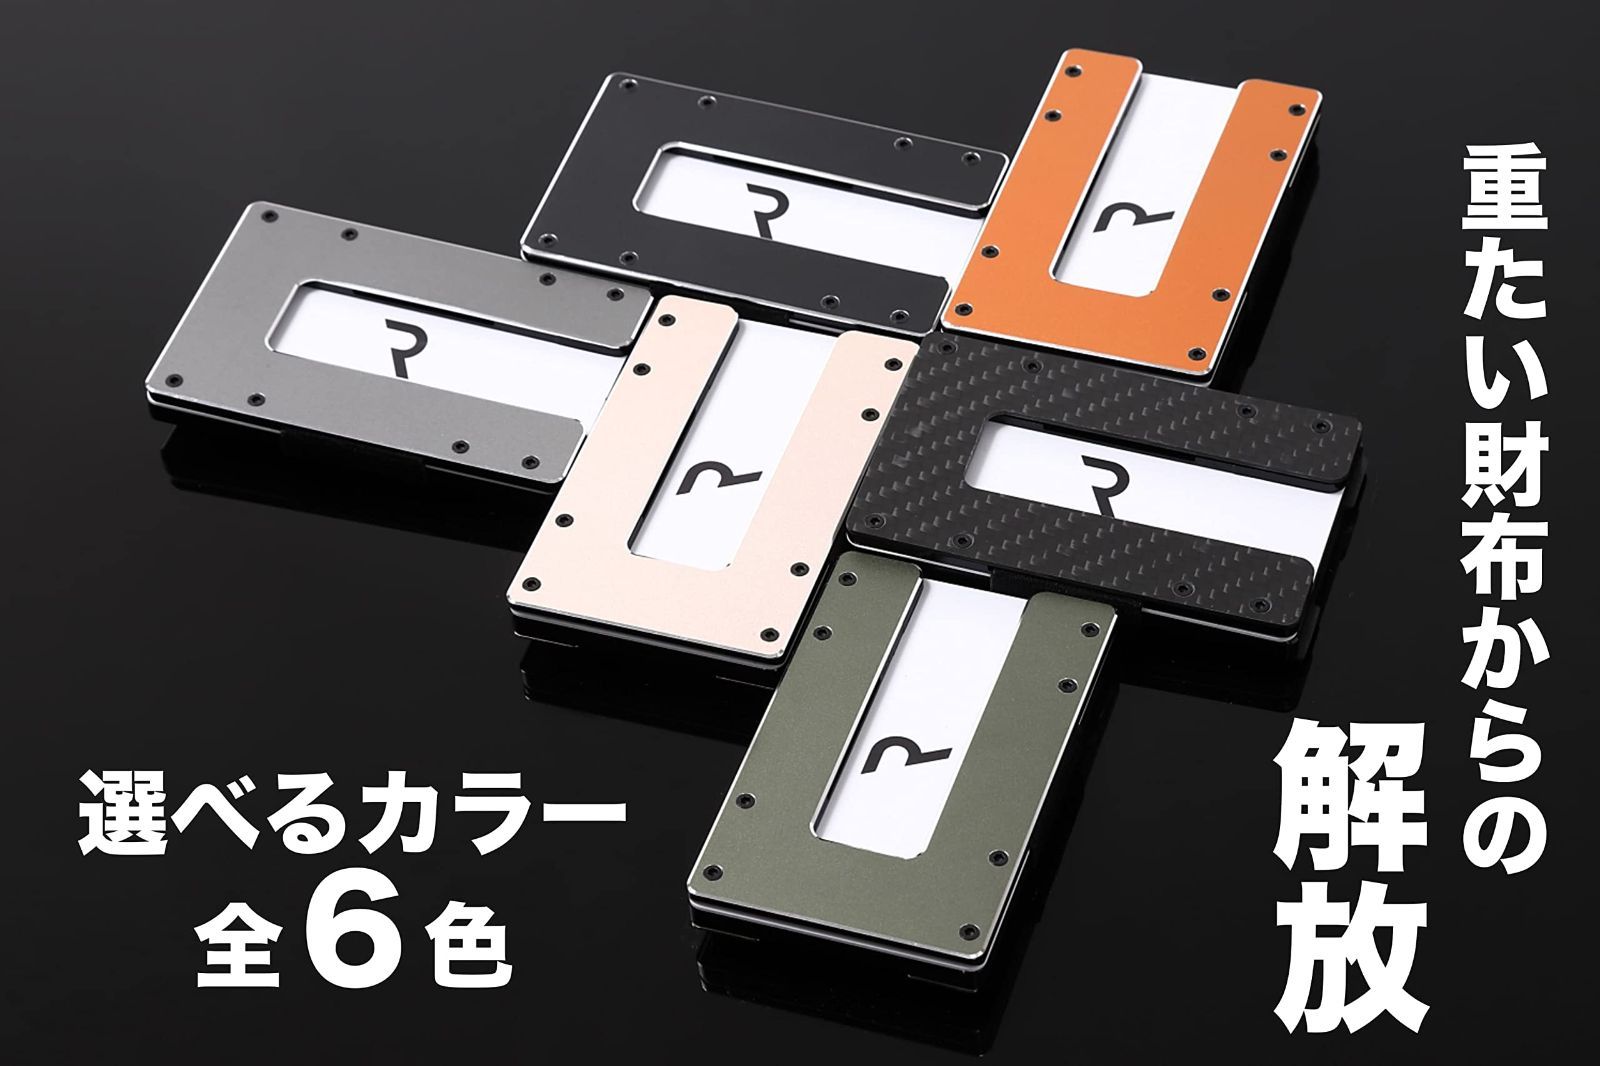 【色: アッシュグレイ】REQFUL カードケース 1.1 グレー ミニ財布 ク